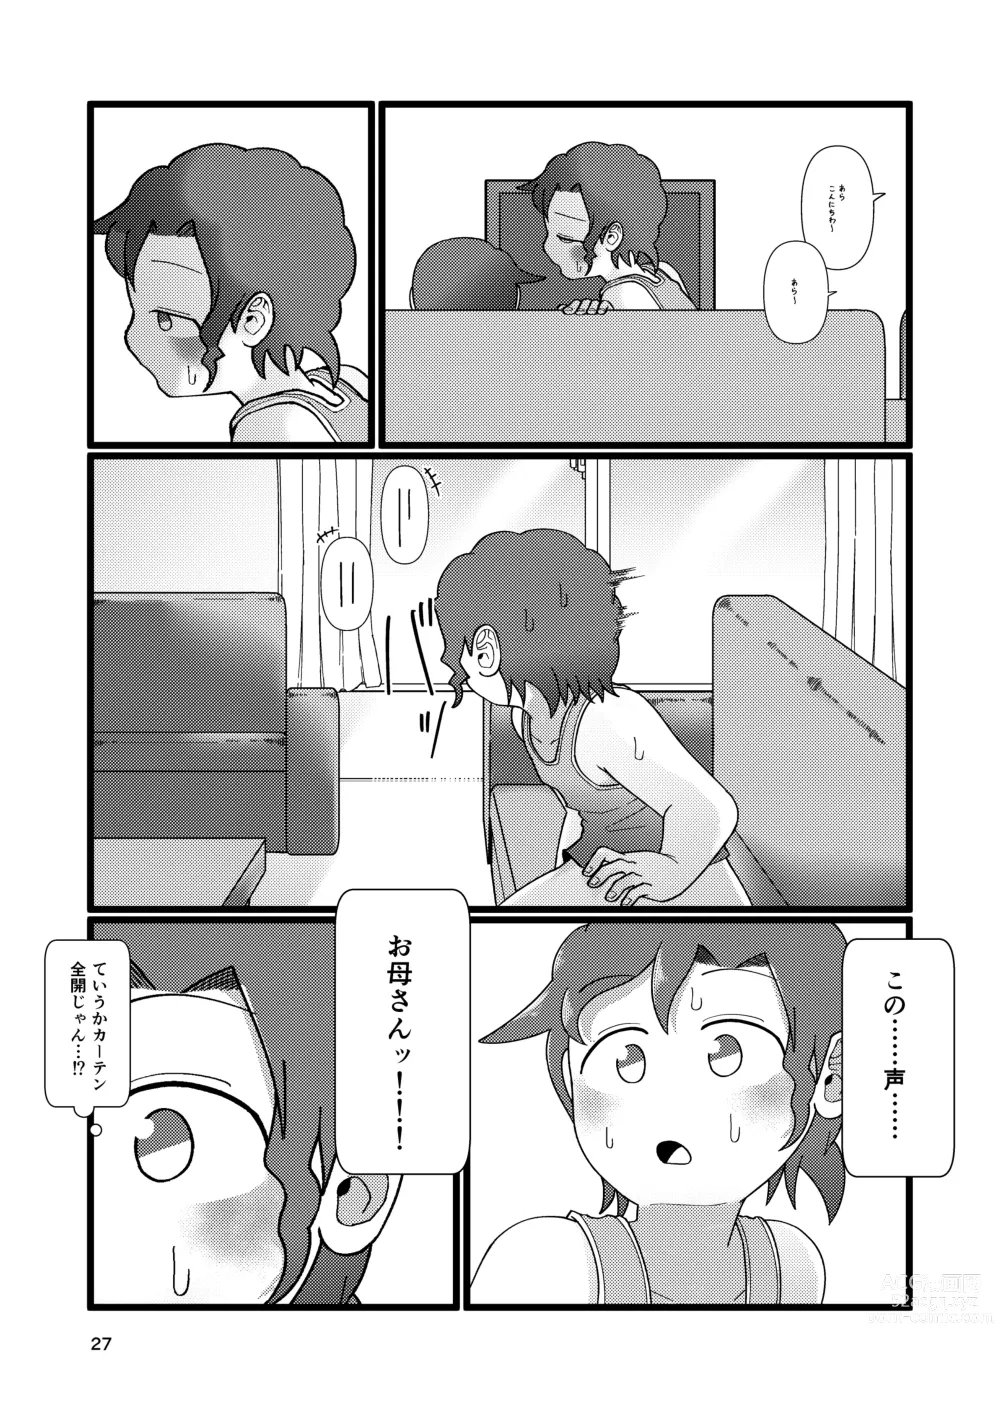 Page 27 of doujinshi Boku to Natsuyasumi no Ane